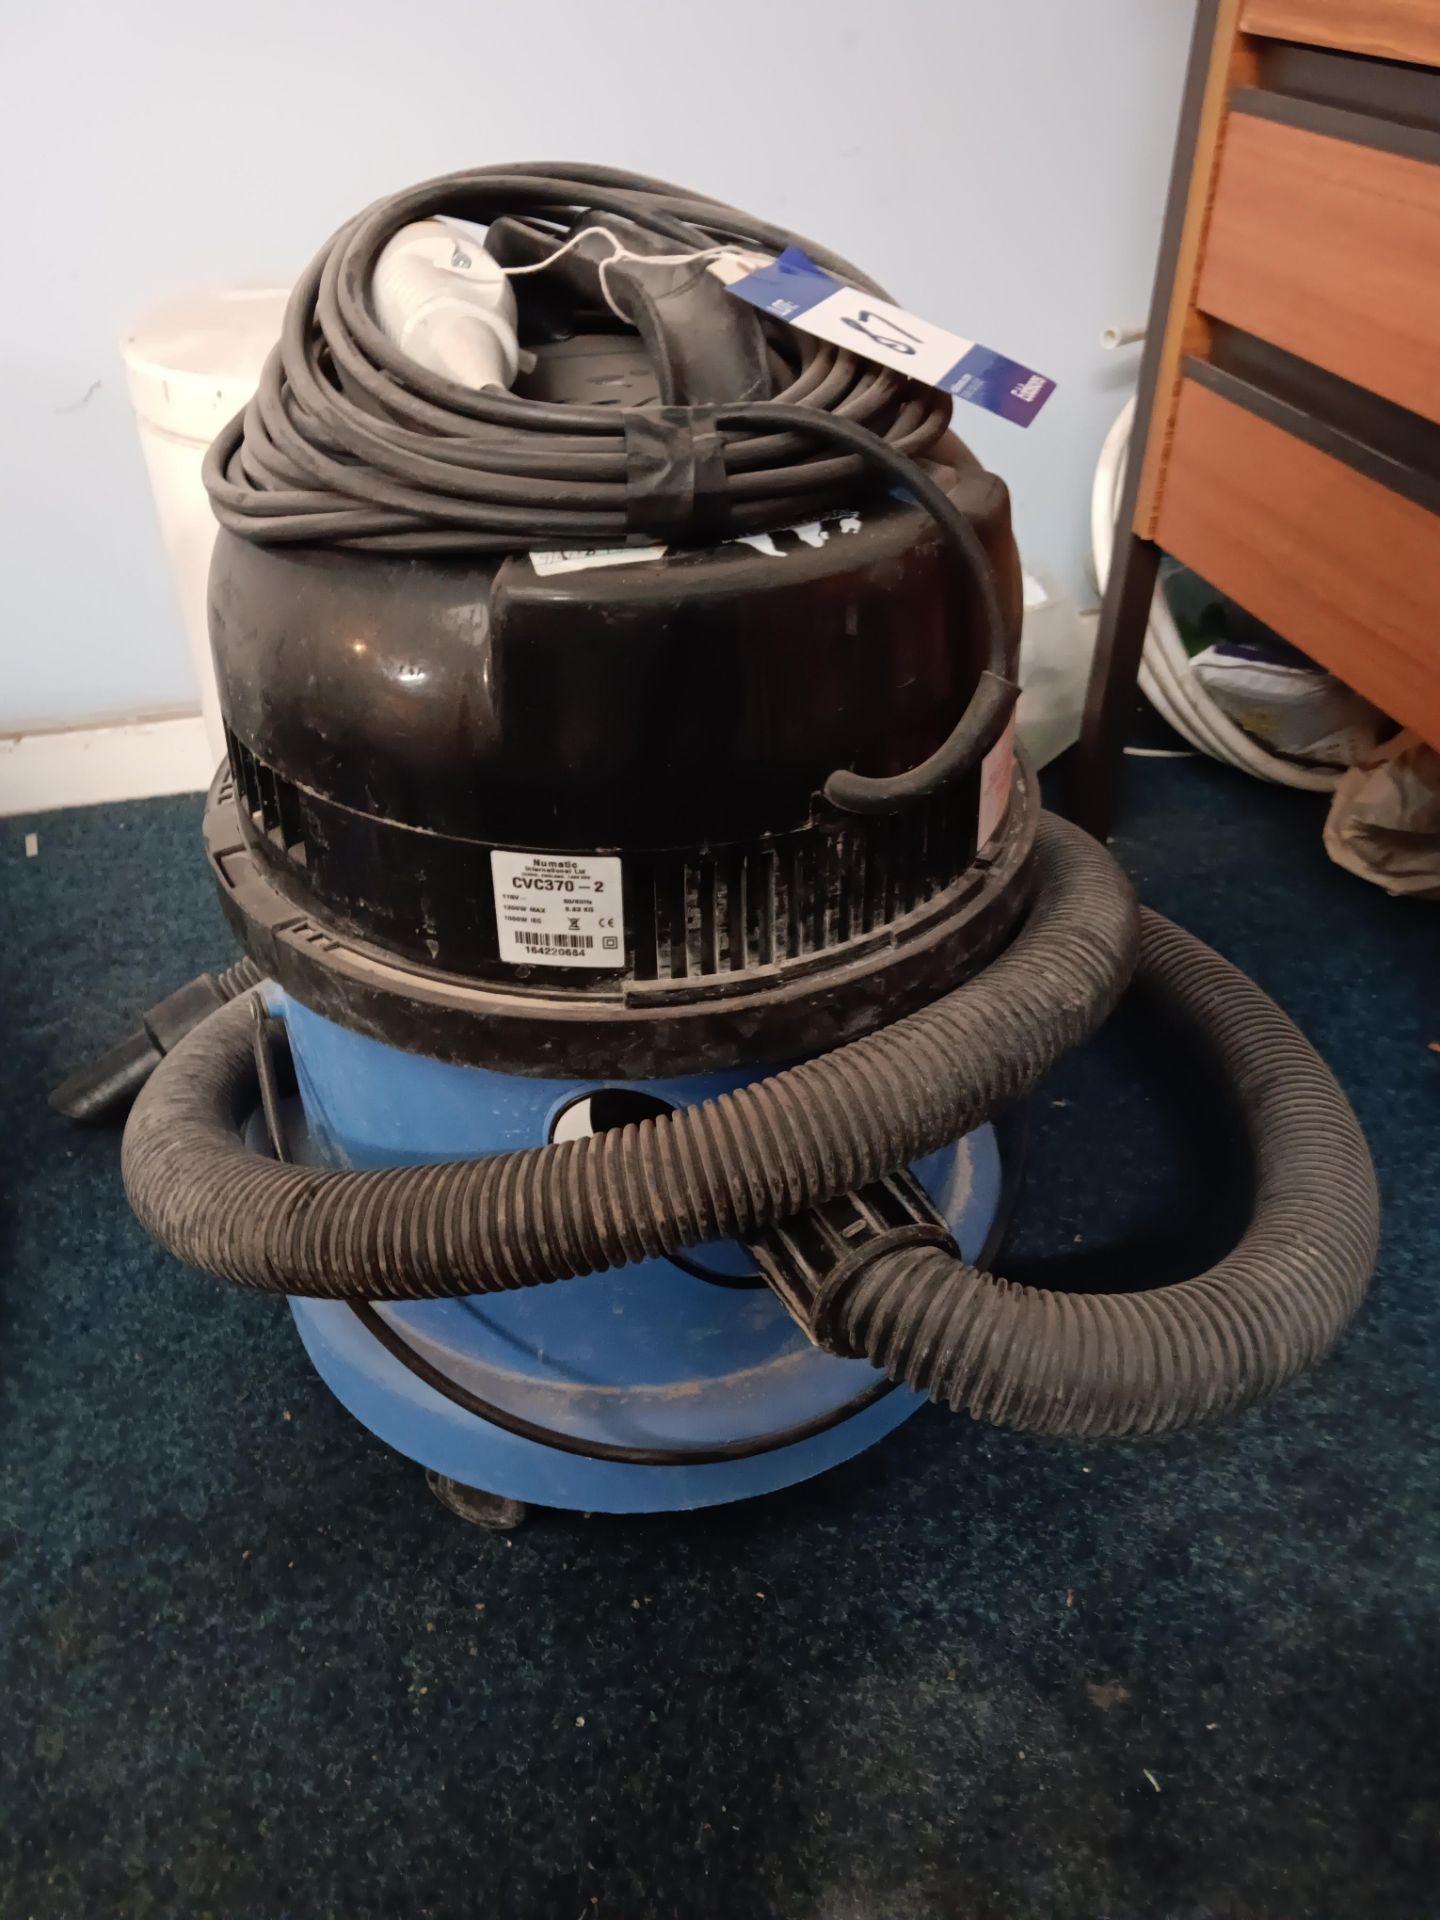 Charles 110V Vacuum Cleaner